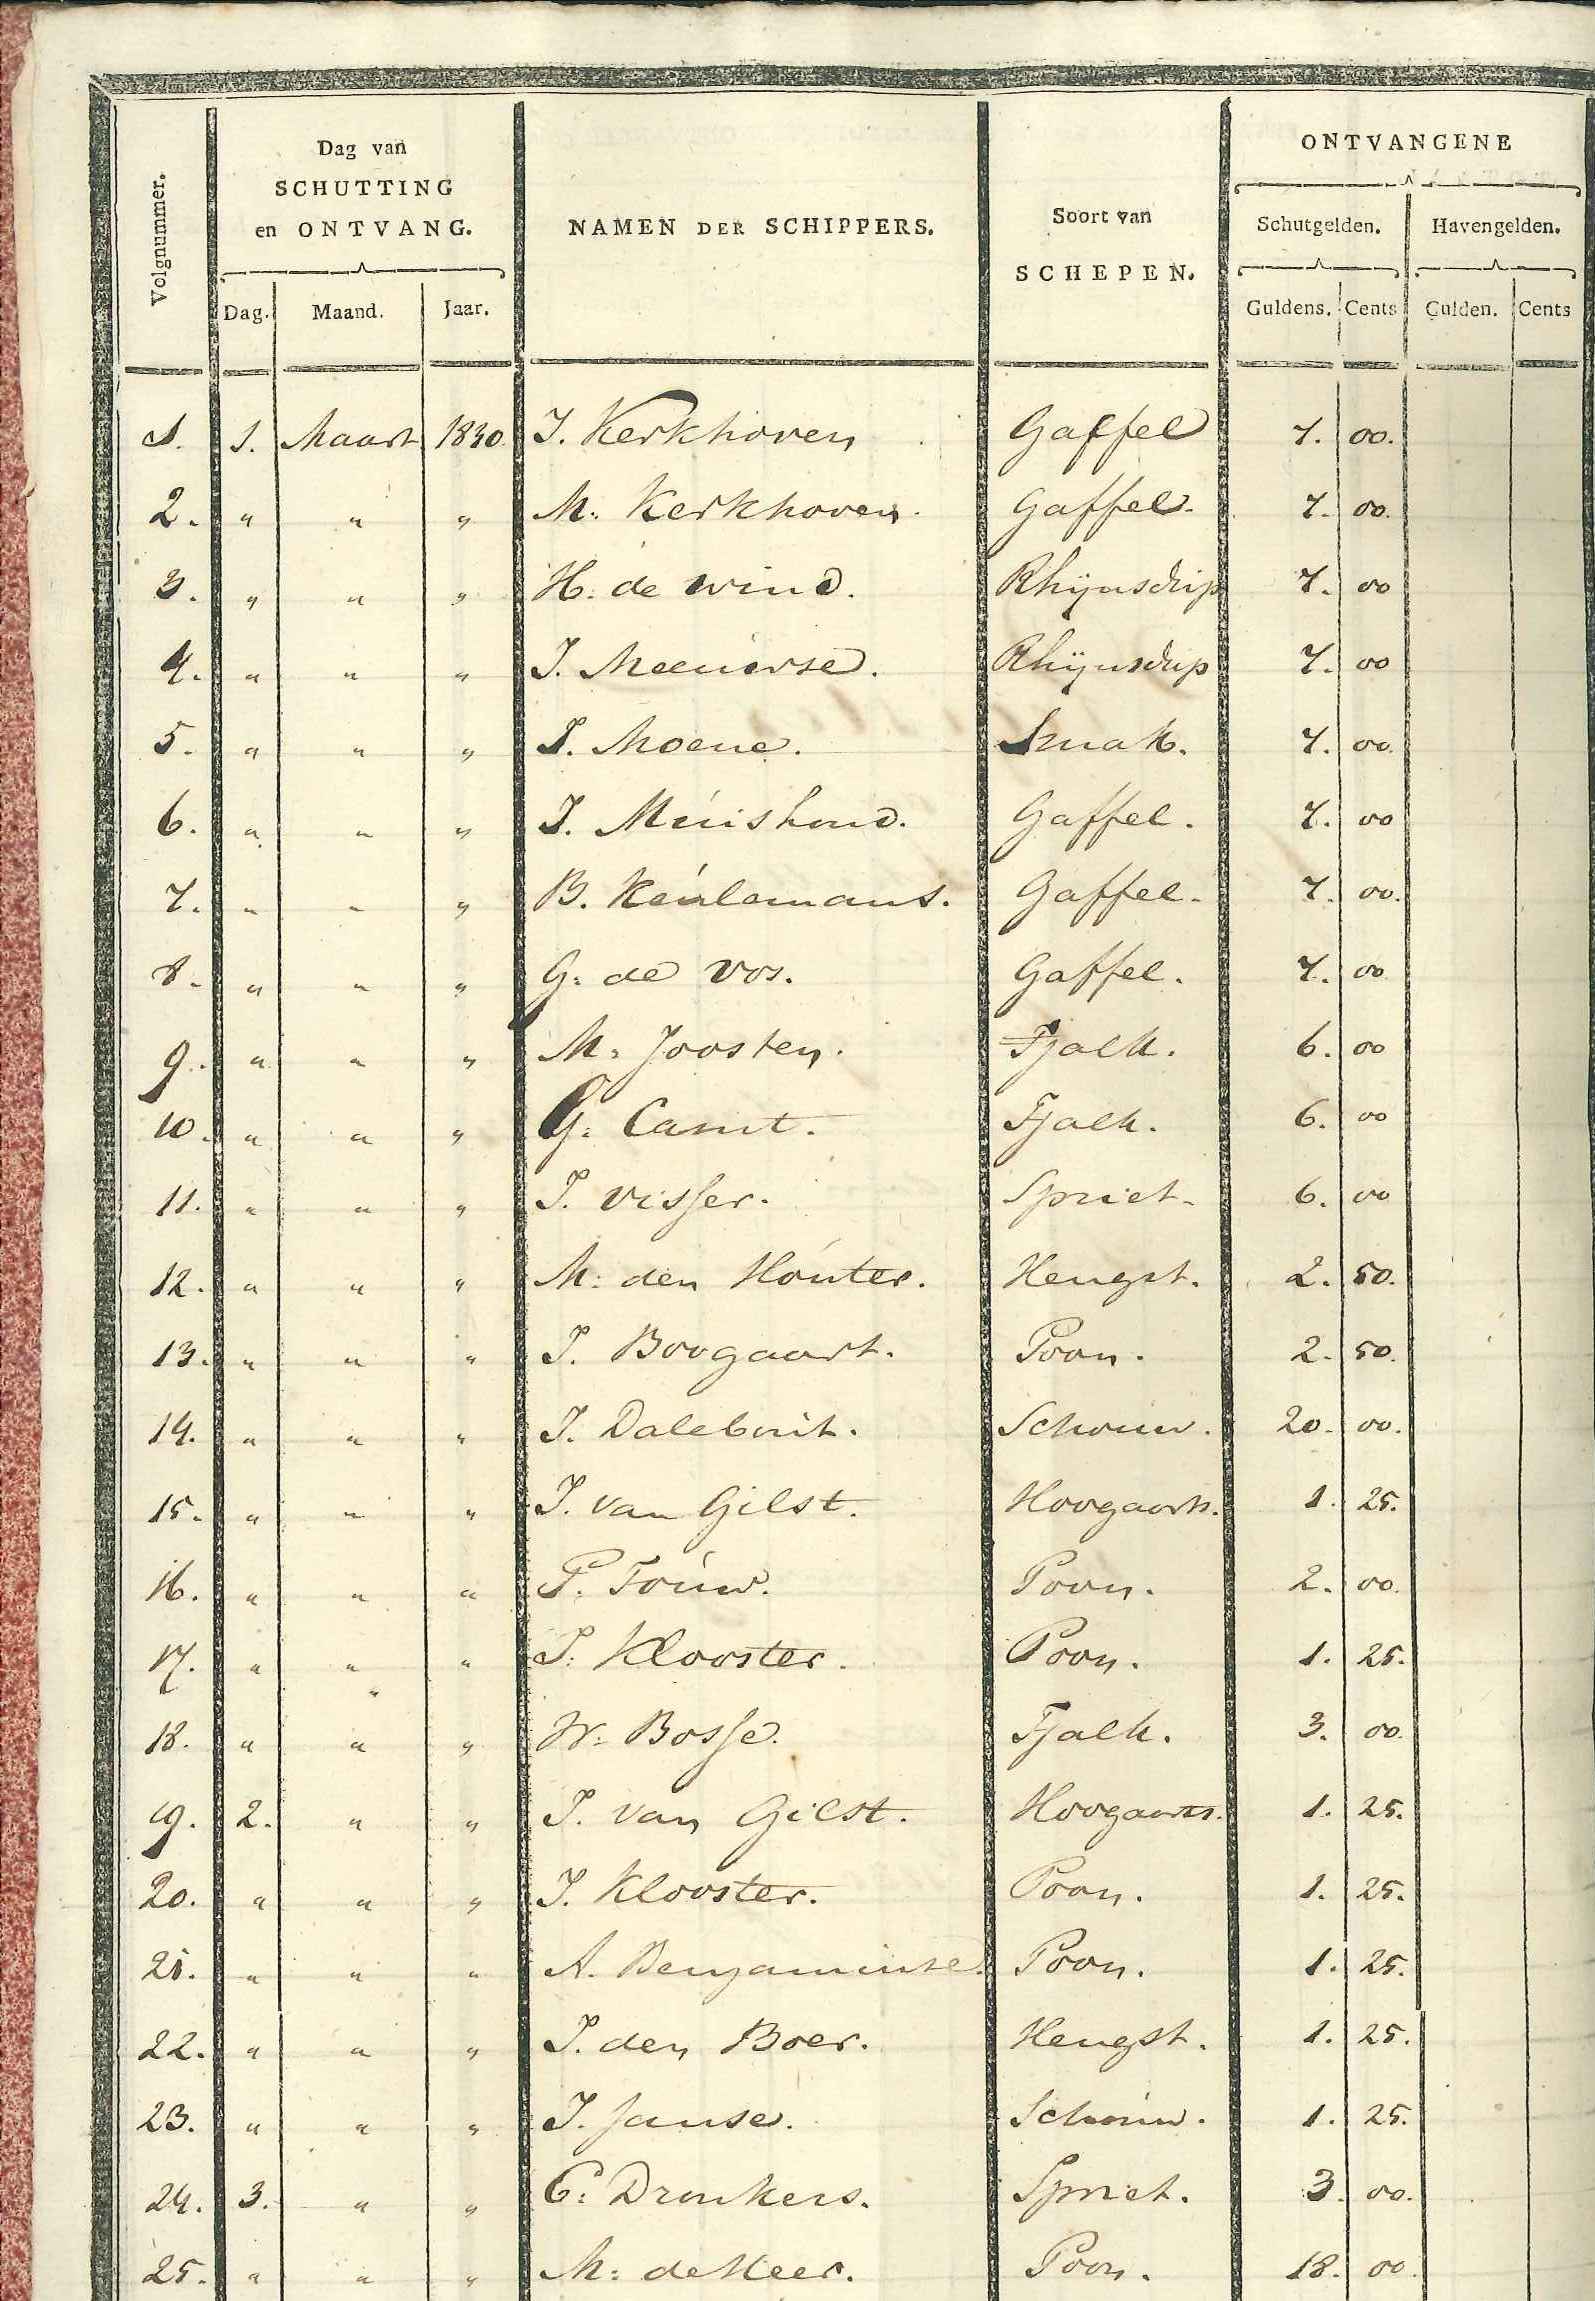 Register van schepen in de sluis en de haven, 1830. GAG.ASG.inv.nr. 1507.